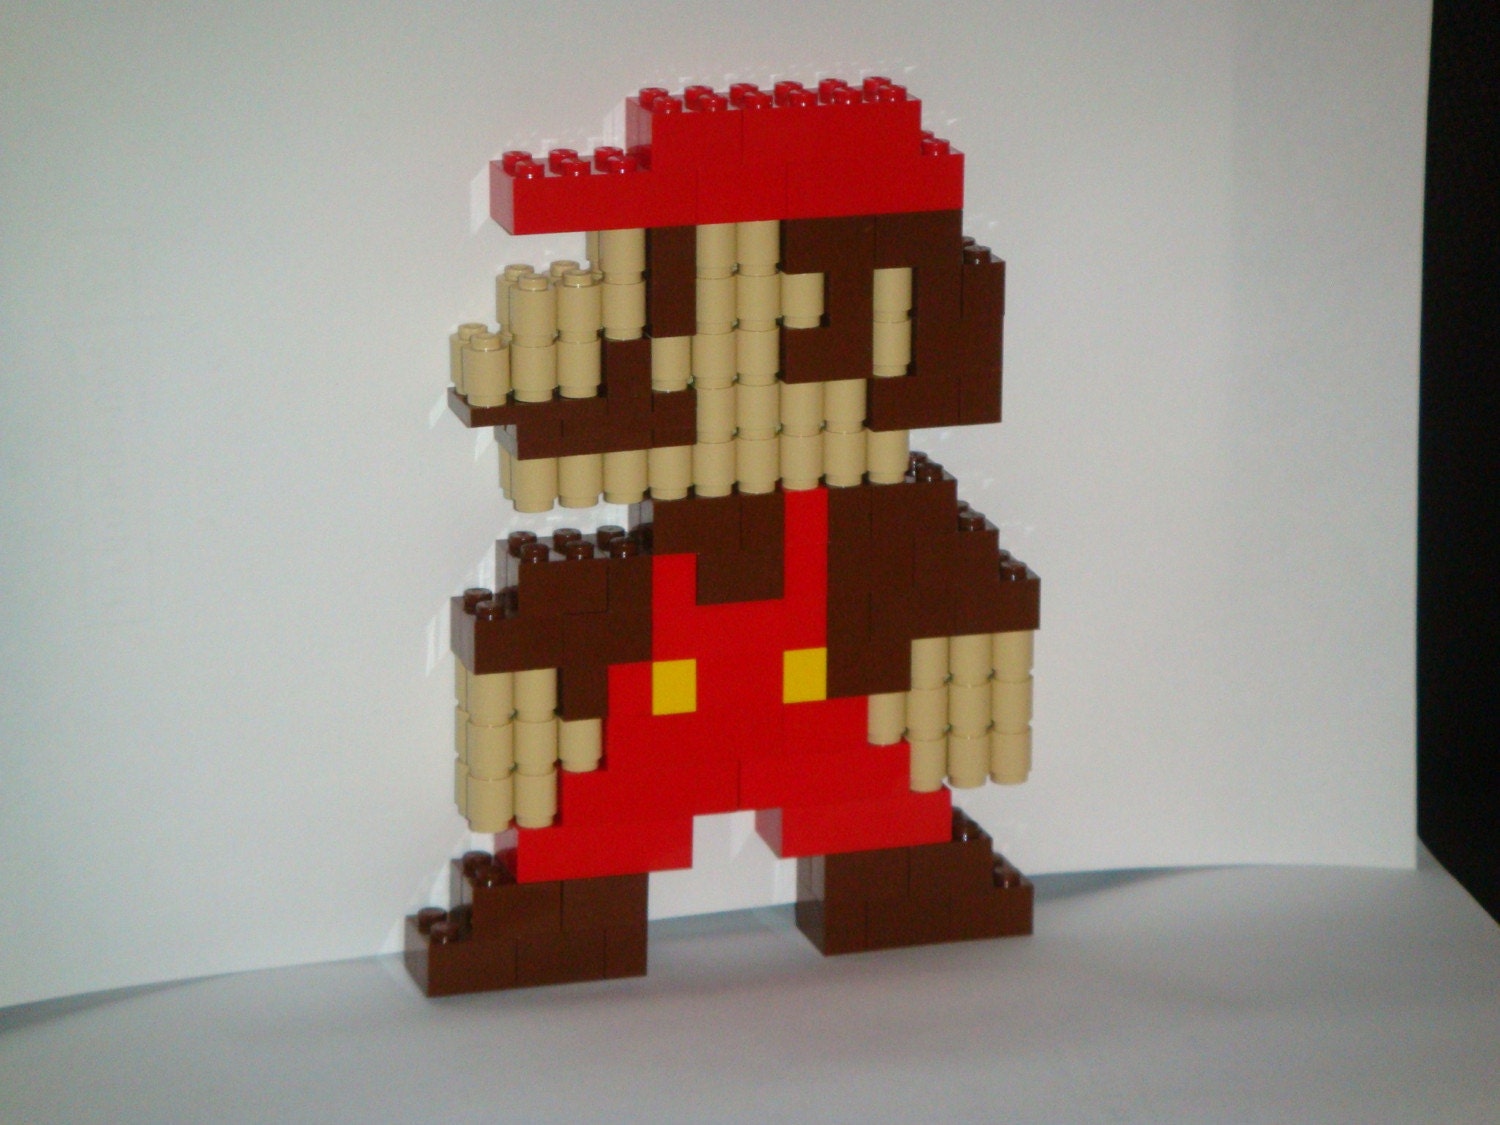 Mario Lego Pictures